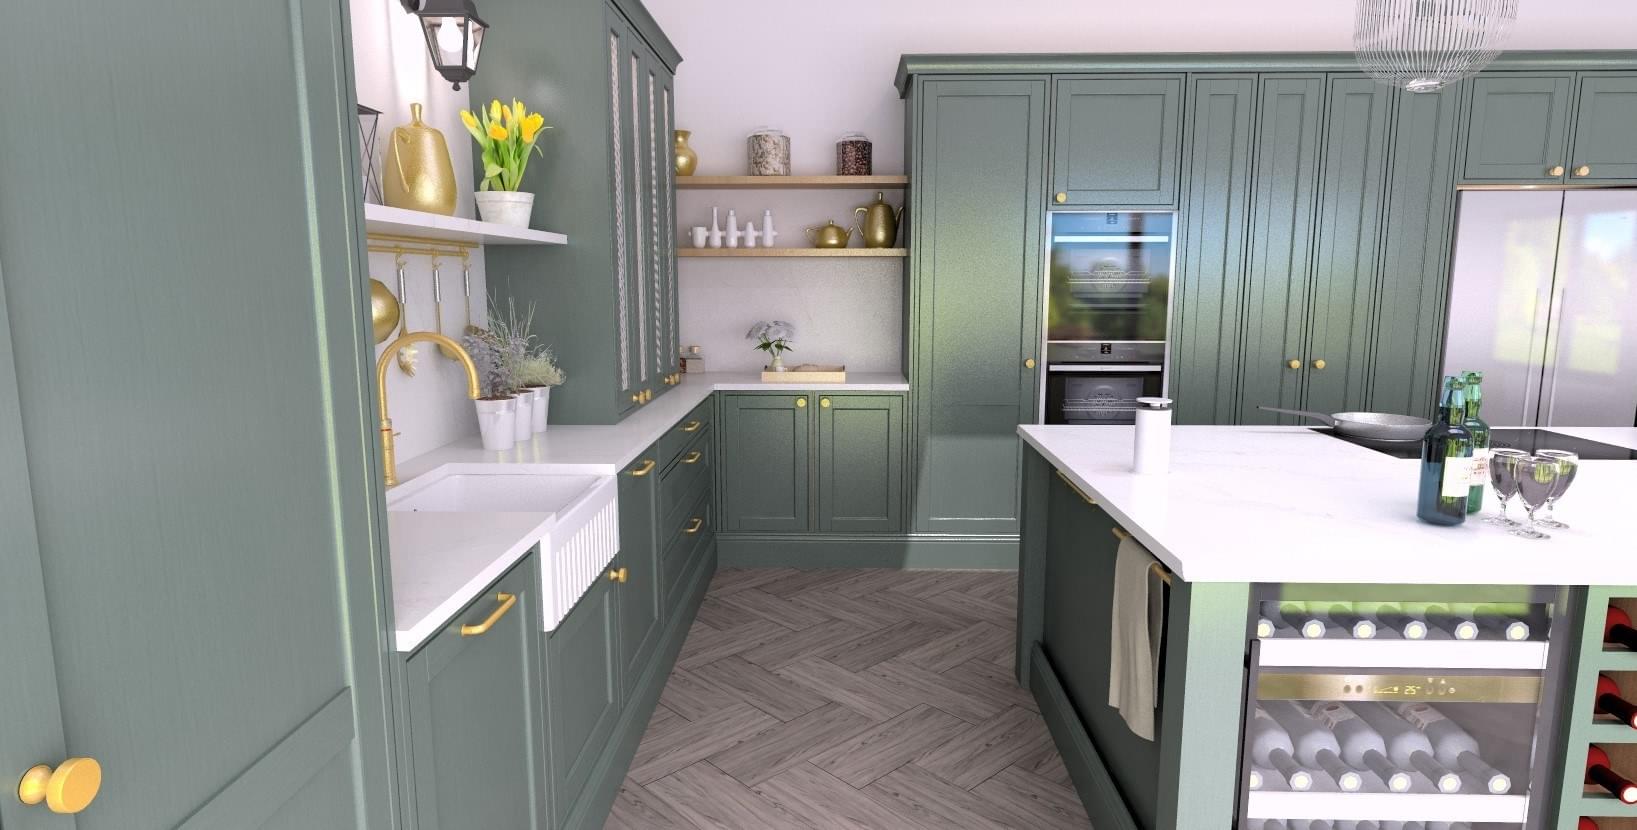 CGI render of Sameera's kitchen